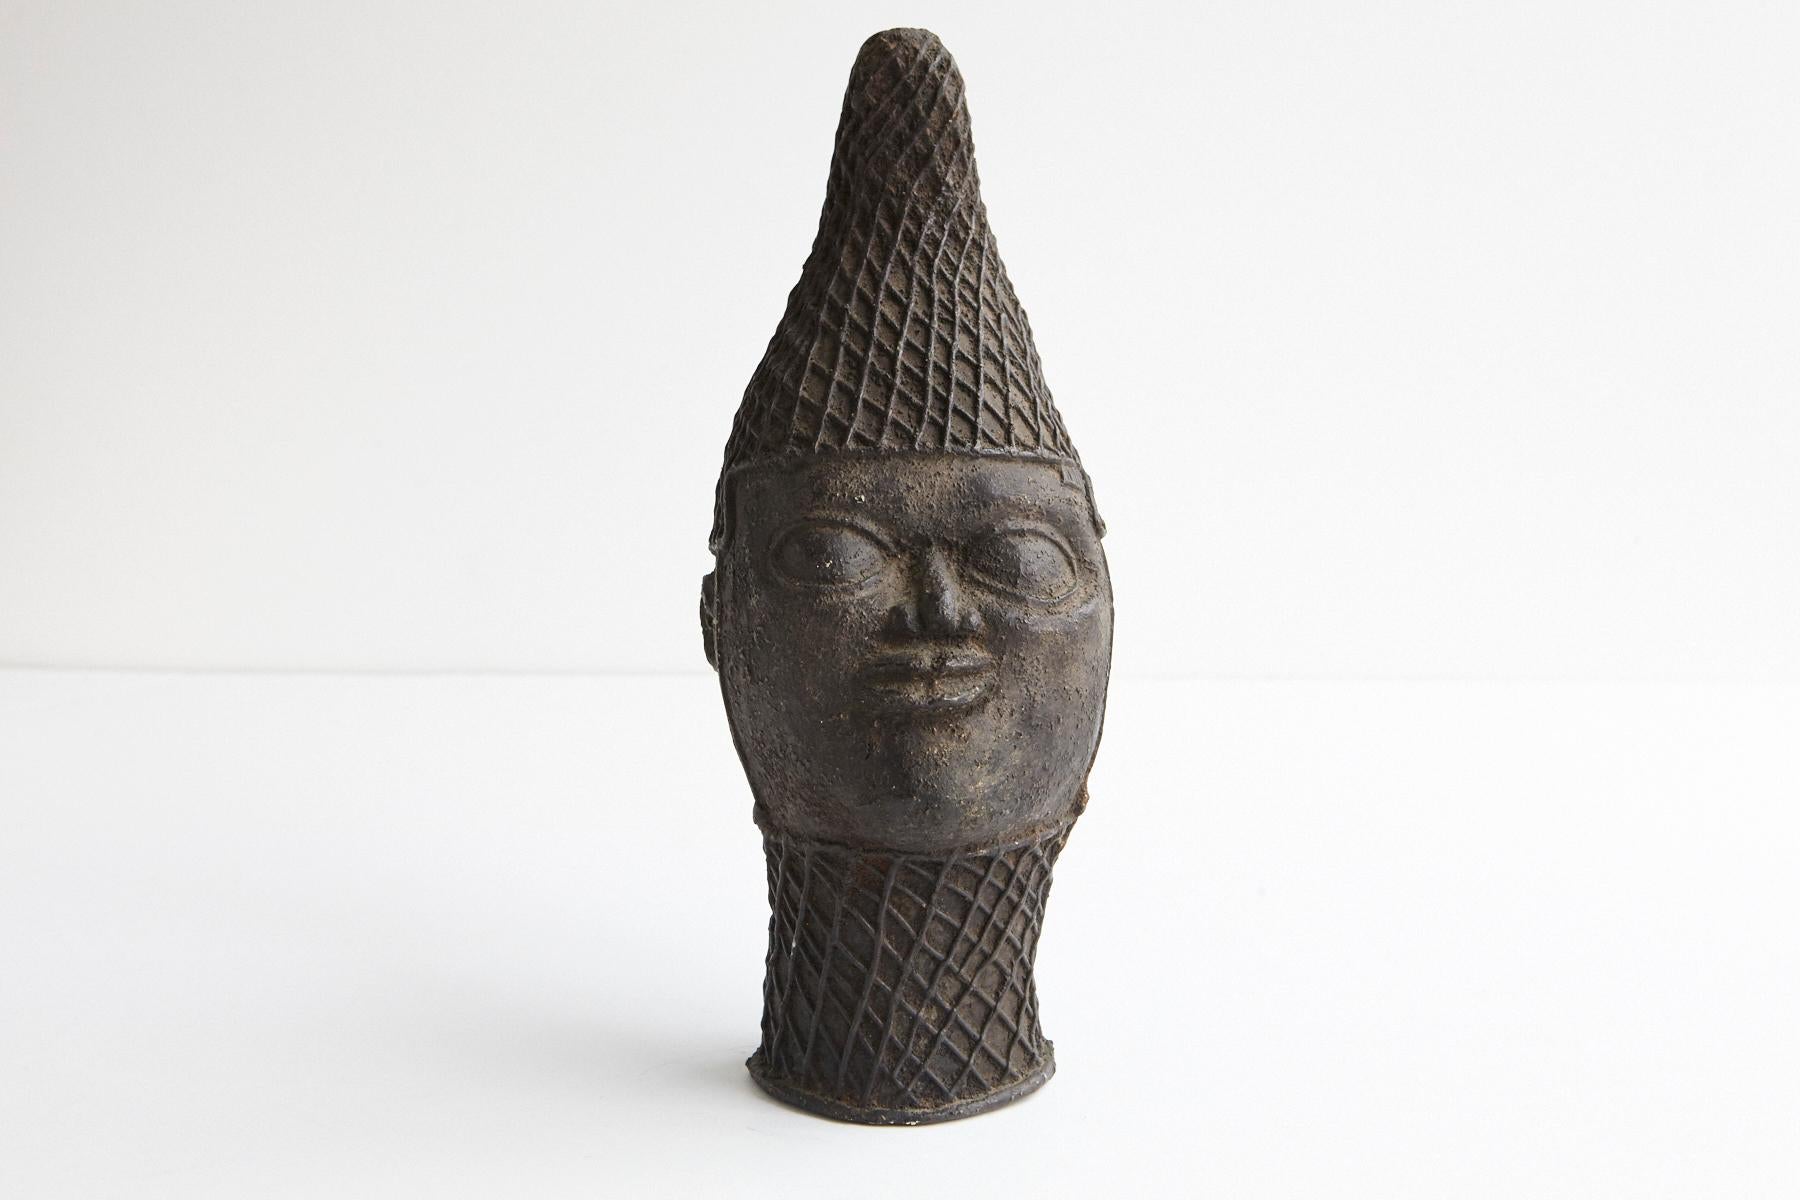 Bronze béninois d'un Oba. Oba signifie souverain en langue yoruba.
Portant un bonnet à motif de treillis avec des fils de perles suspendus autour de la tête.
Le cou est entouré d'un tour de cou serré en forme de treillis.
La tête représente le